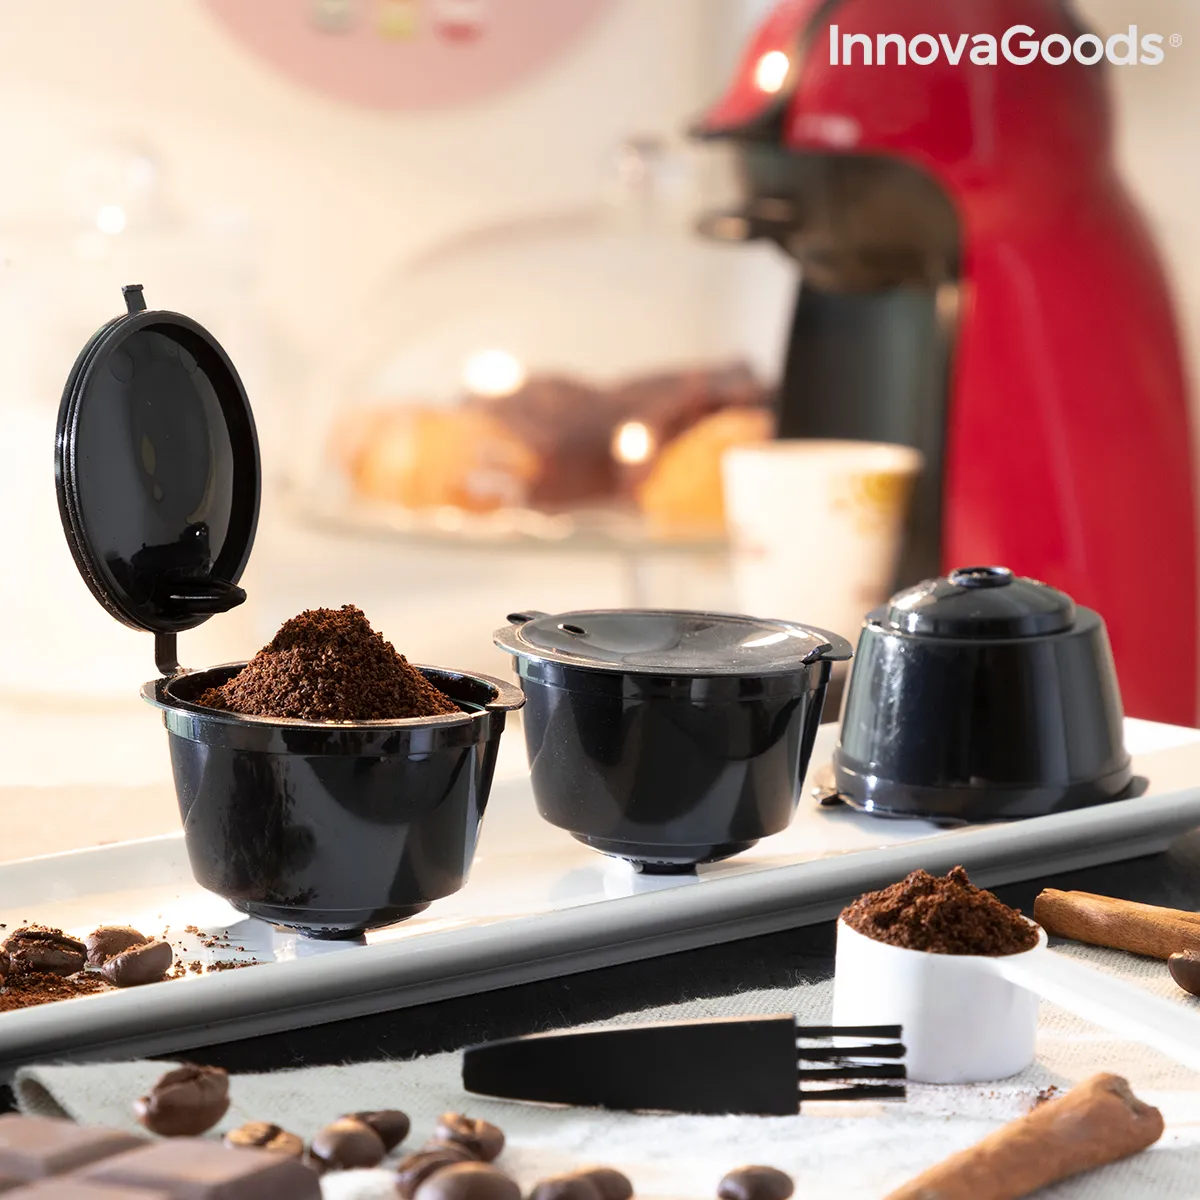 Innovagoods Set mit 3 wiederverwendbaren Kaffeekapseln Redol InnovaGoods